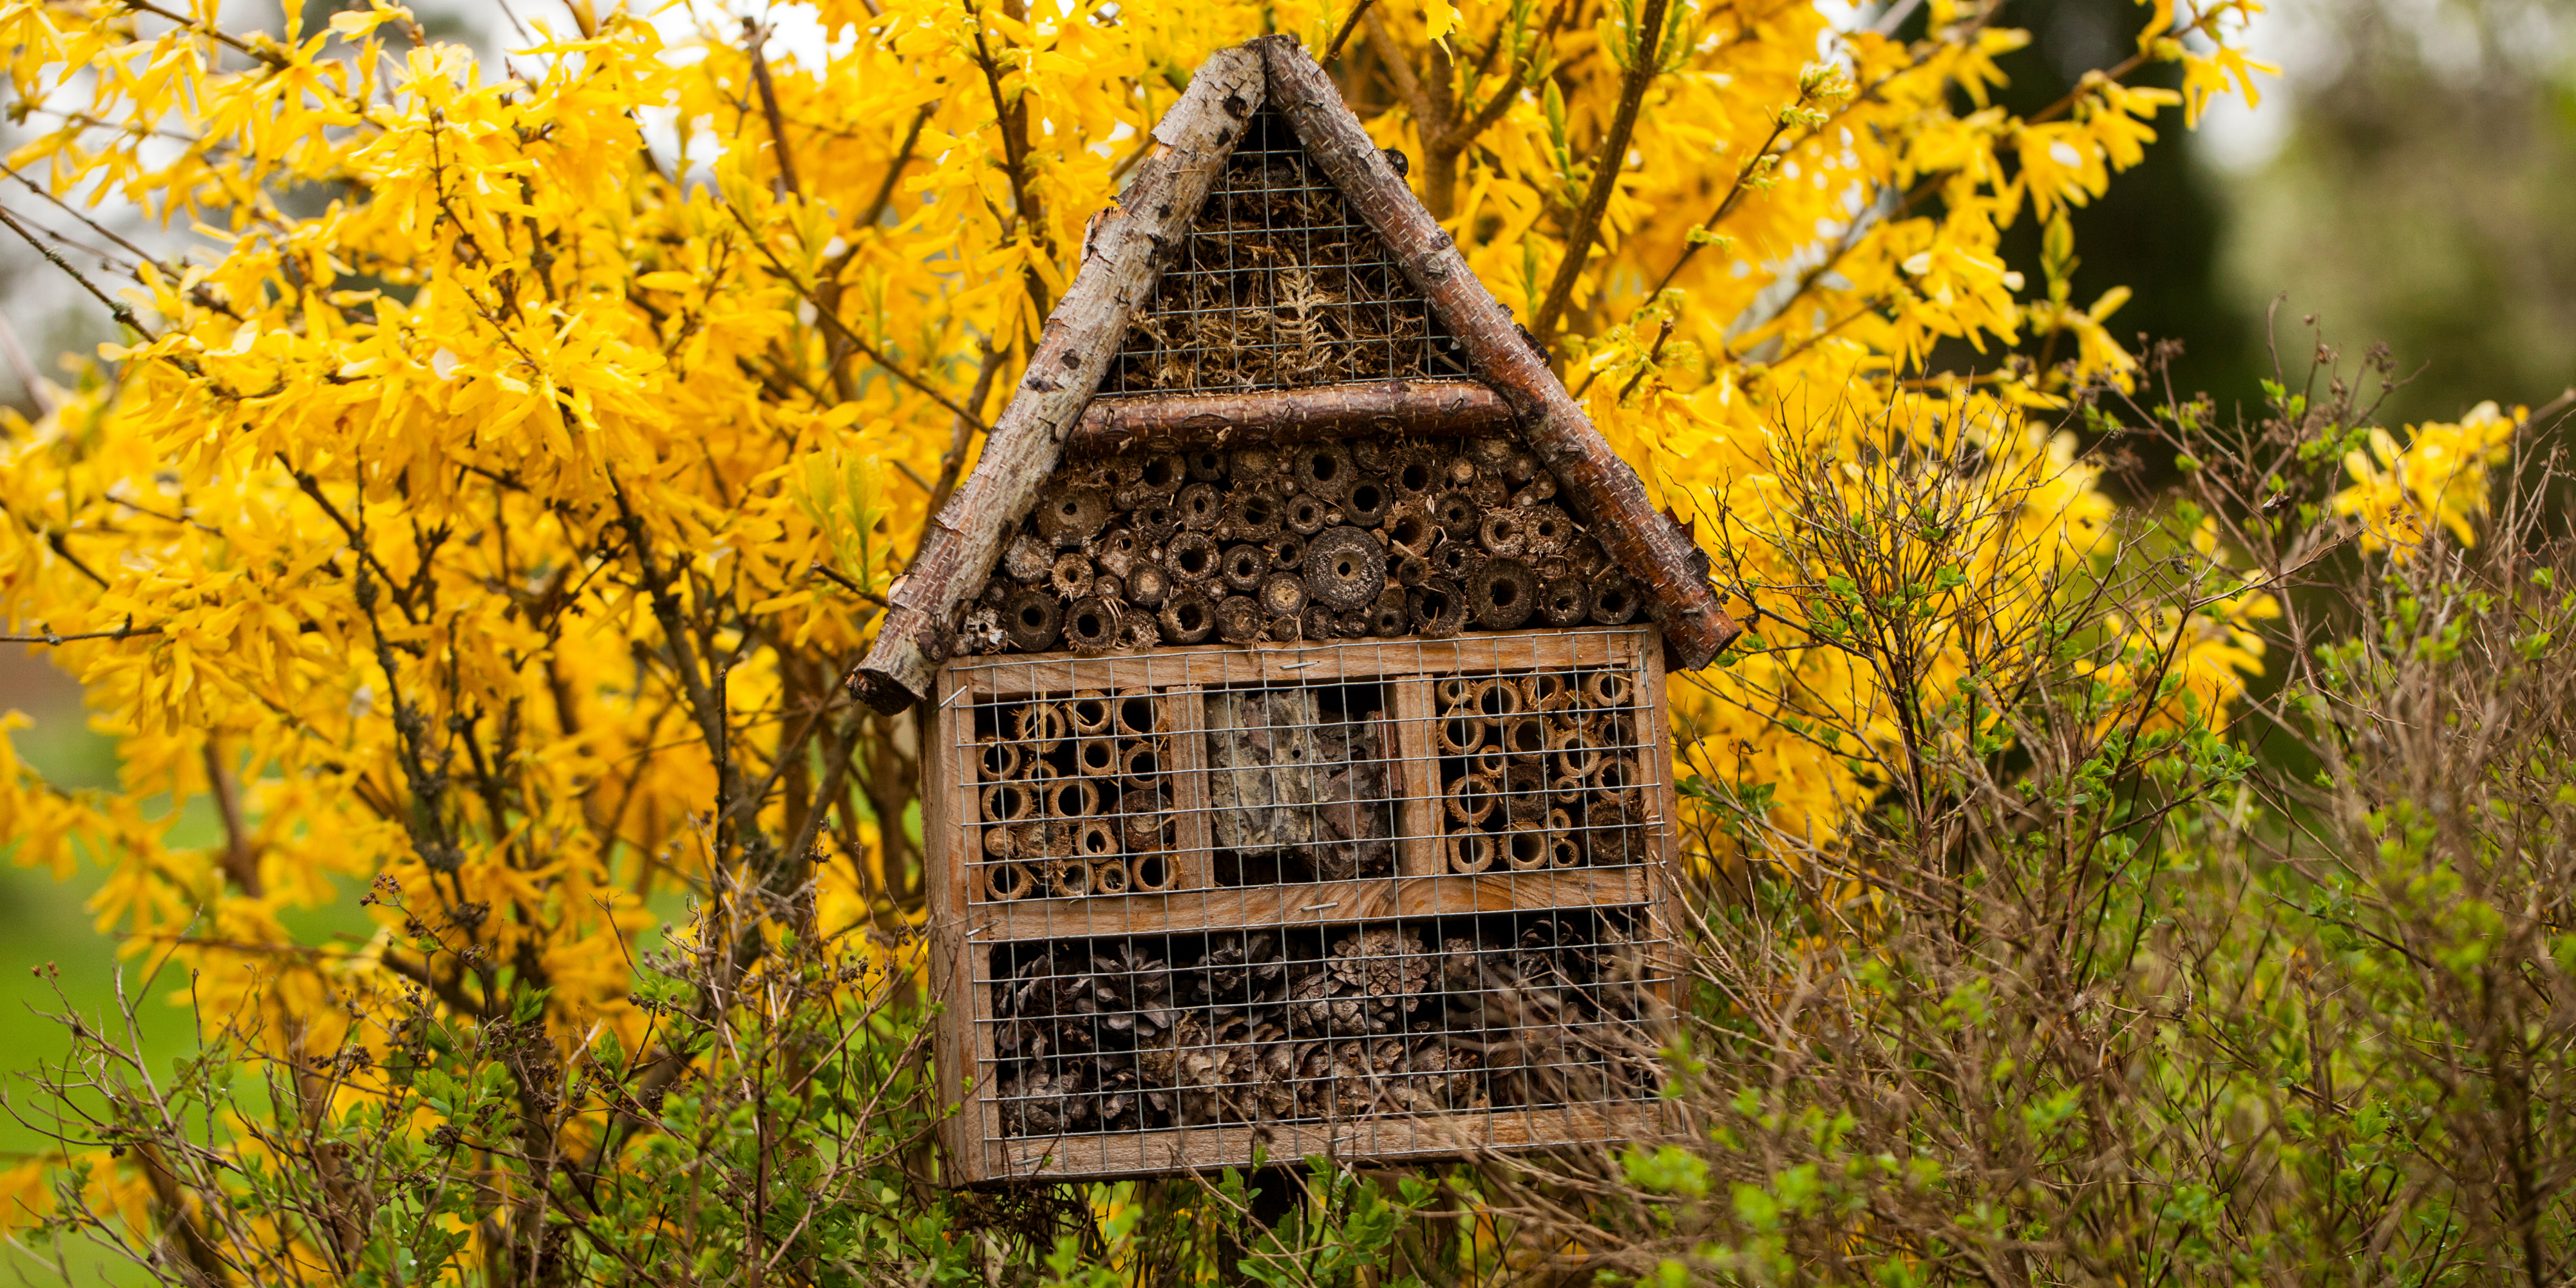 L'intérêt d'un hôtel à insectes dans votre jardin - Les Carnets de